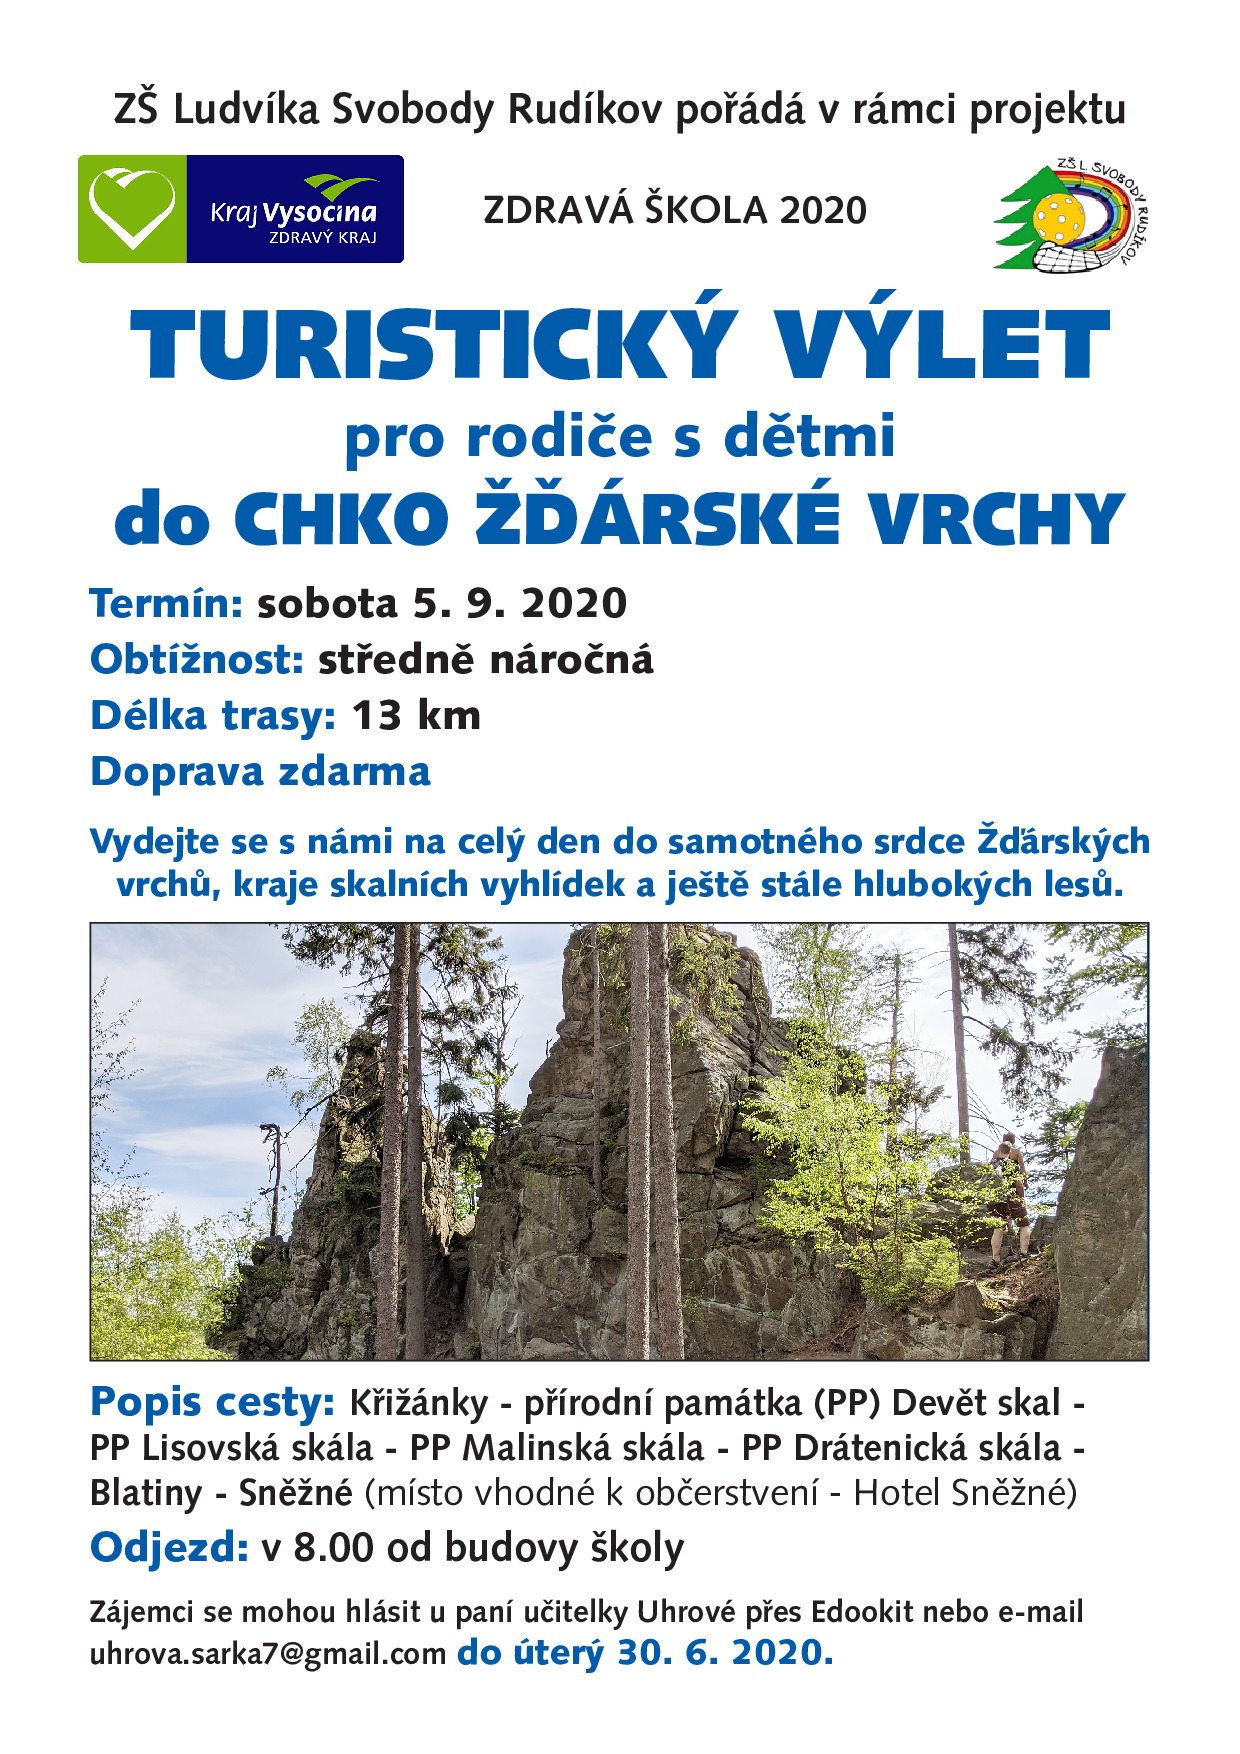 Turistický výlet CHKO Žďárské vrchy - PLNĚ OBSAZENO!!!